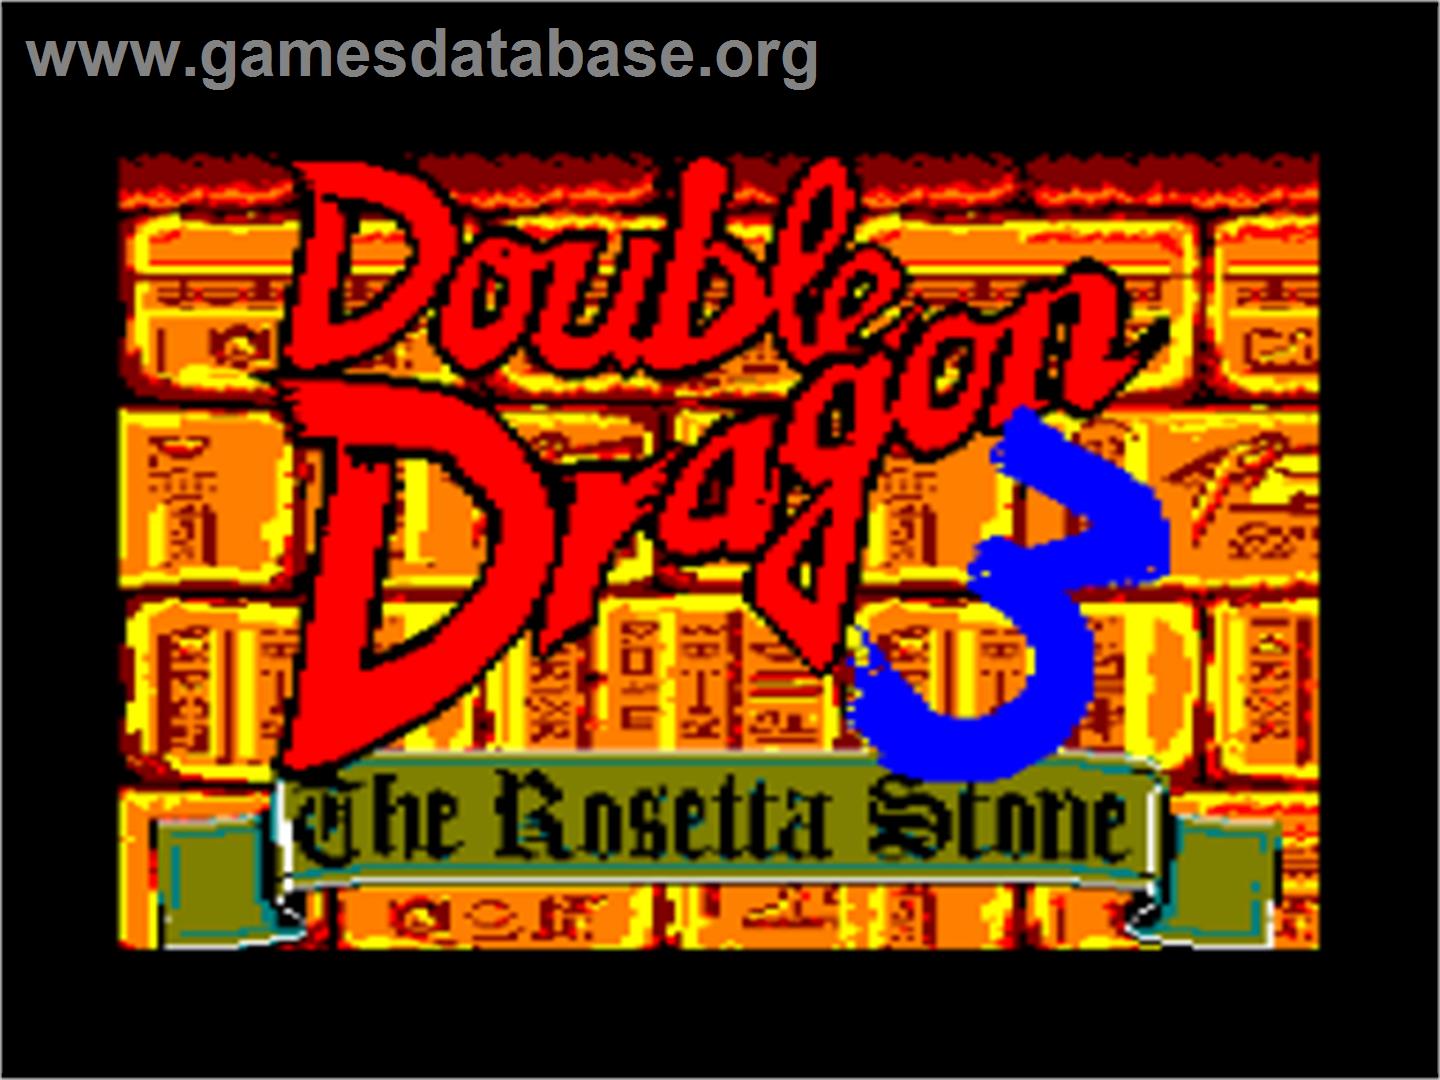 Double Dragon 3 - The Rosetta Stone - Amstrad CPC - Artwork - Title Screen